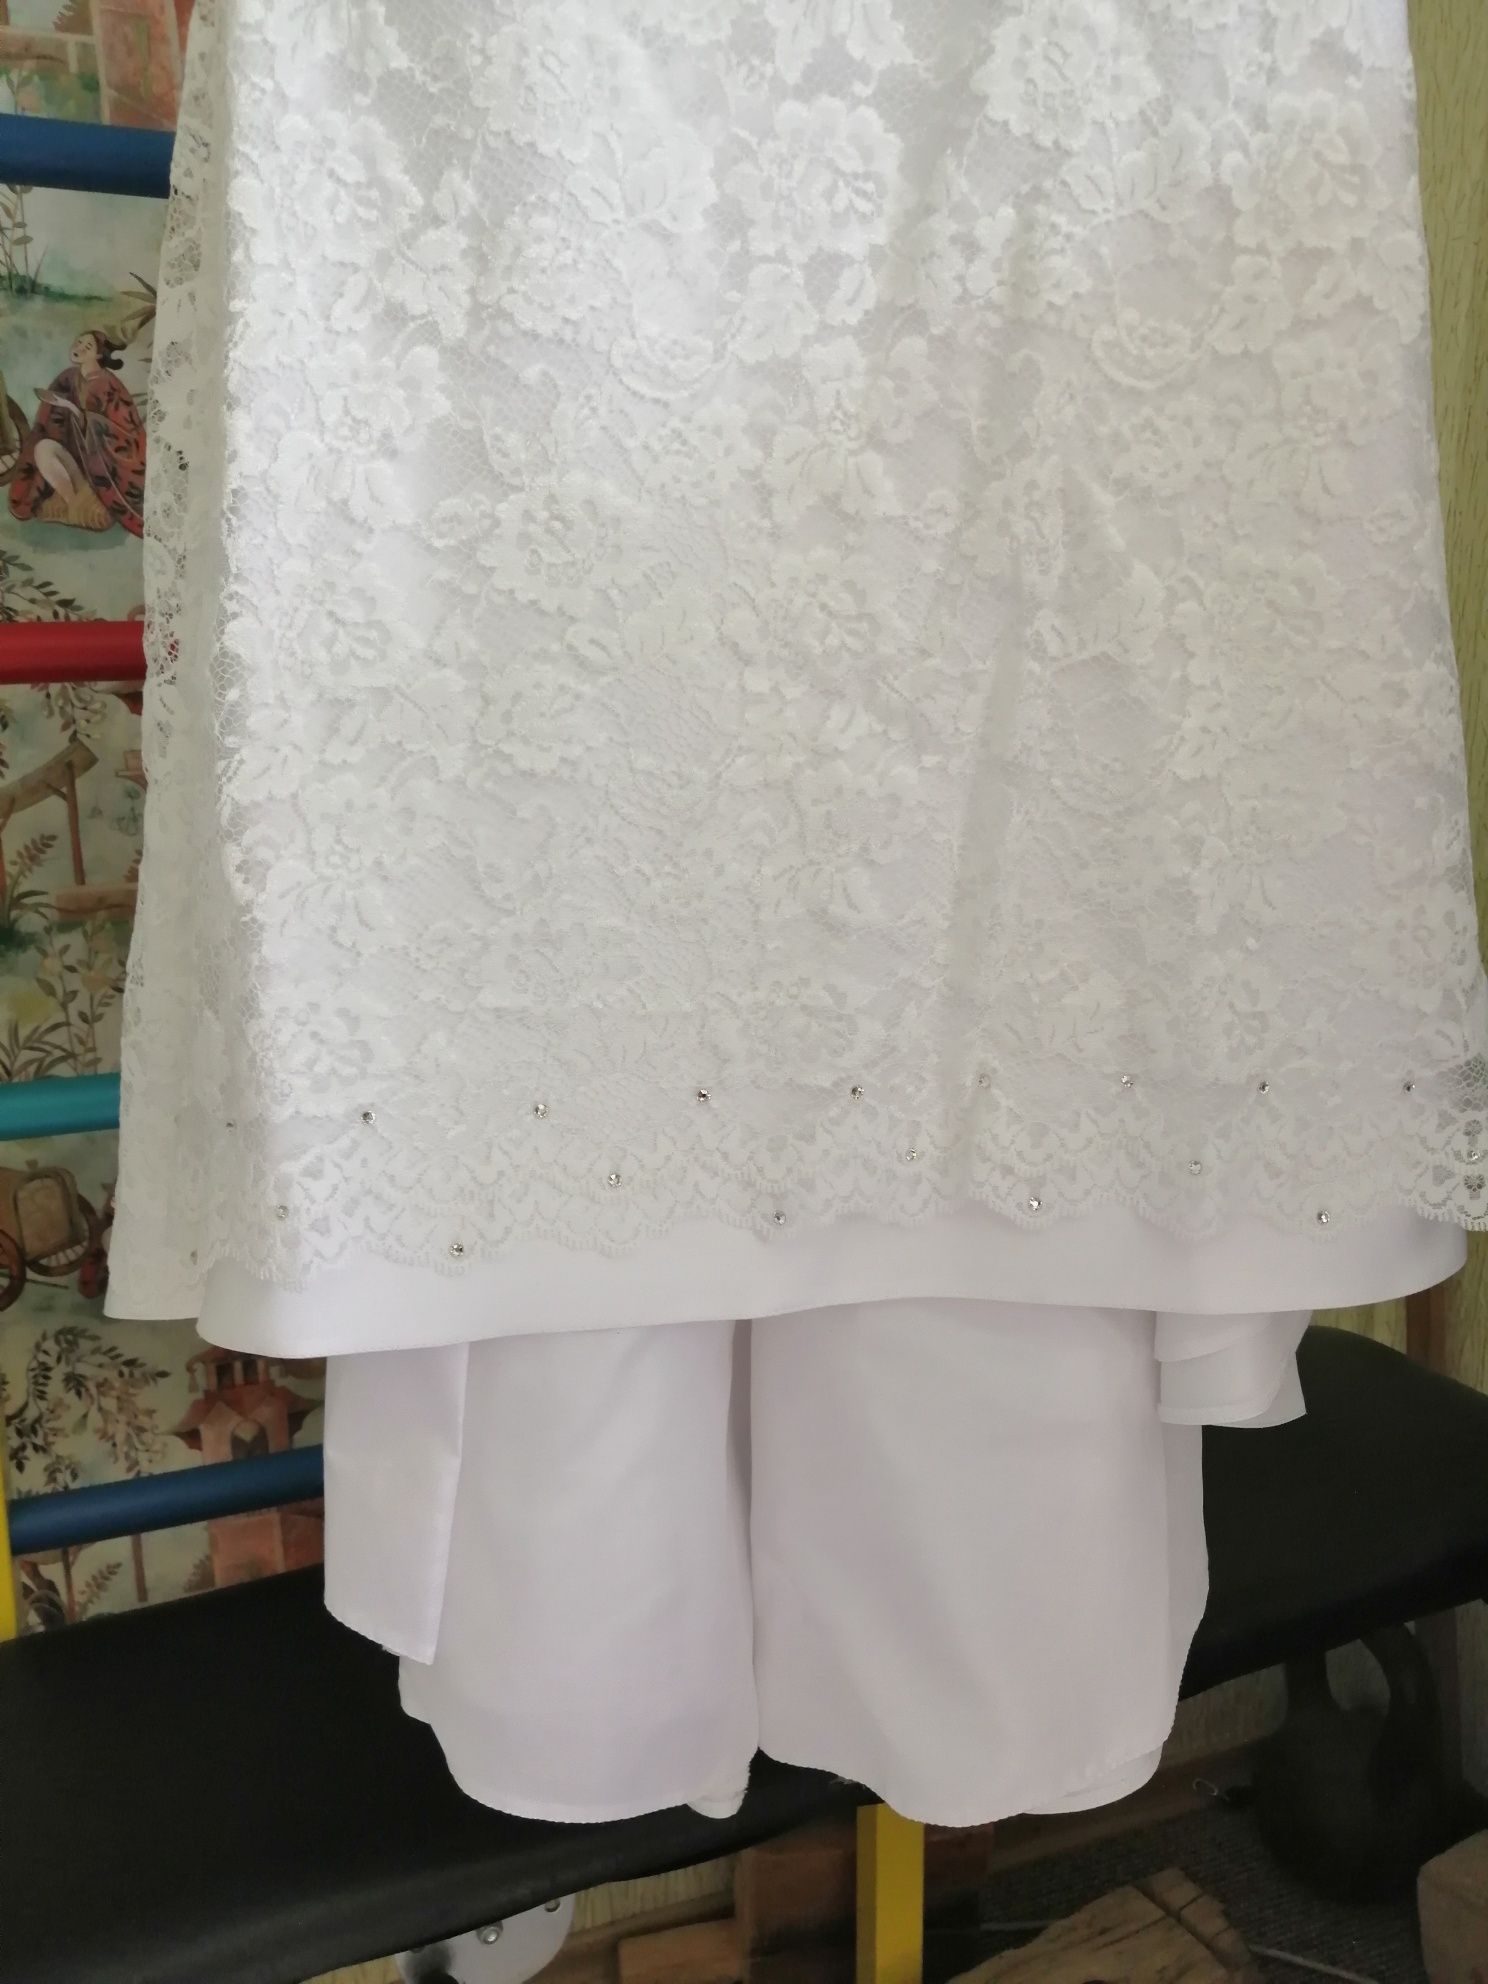 Раздельное свадебное платье Slanovskiy